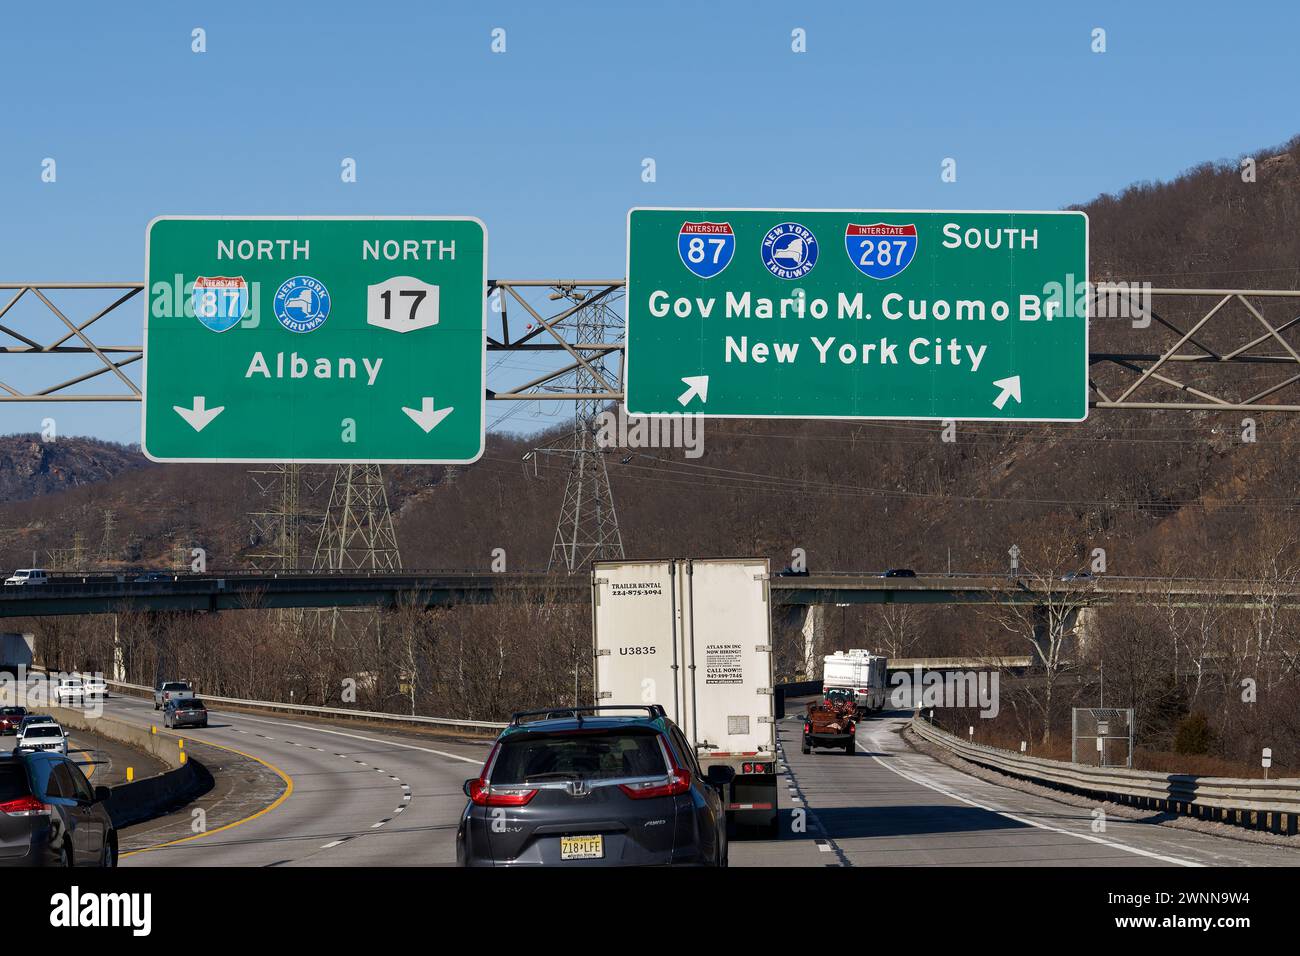 Suffern, NY - 27 février 2022 : panneaux de sortie sur la I-287 pour la I-87 New York State Thruway Nord vers Albany et NY-17, et sud vers le Gouverneur Mario M. Cuom Banque D'Images